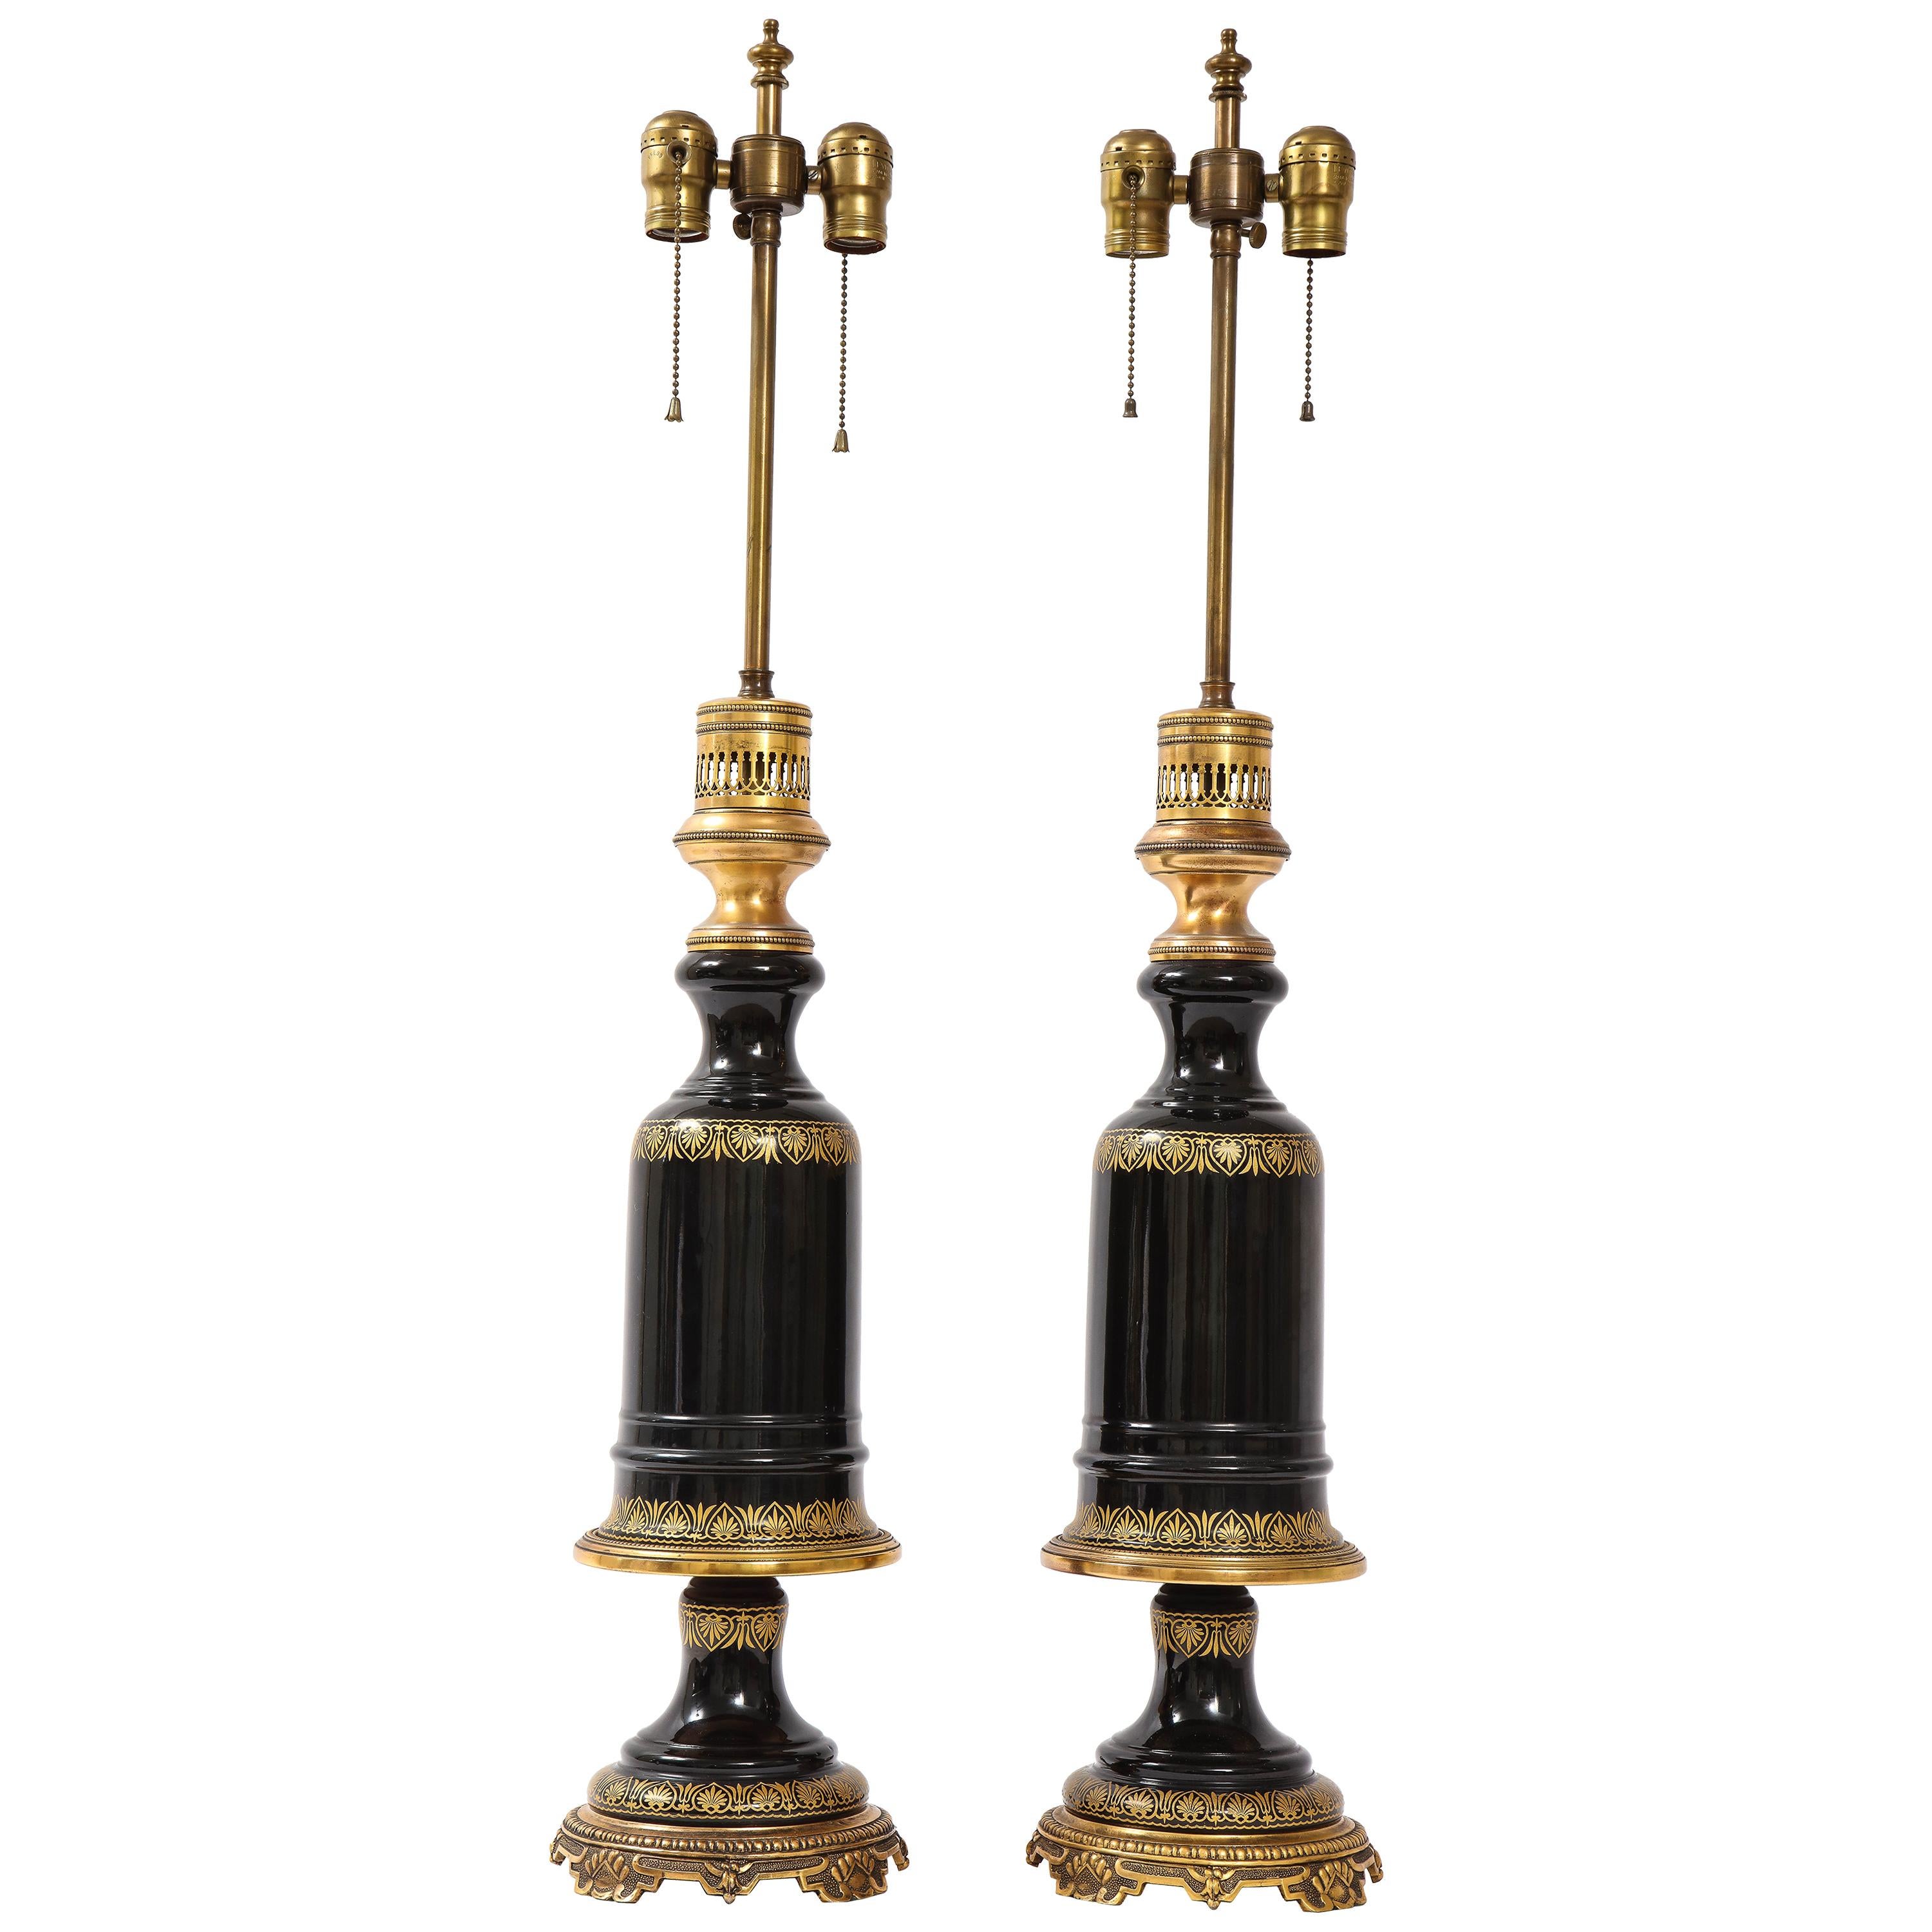 Magnifique paire de lampes françaises en cristal d'améthyste noire montées sur bronze doré